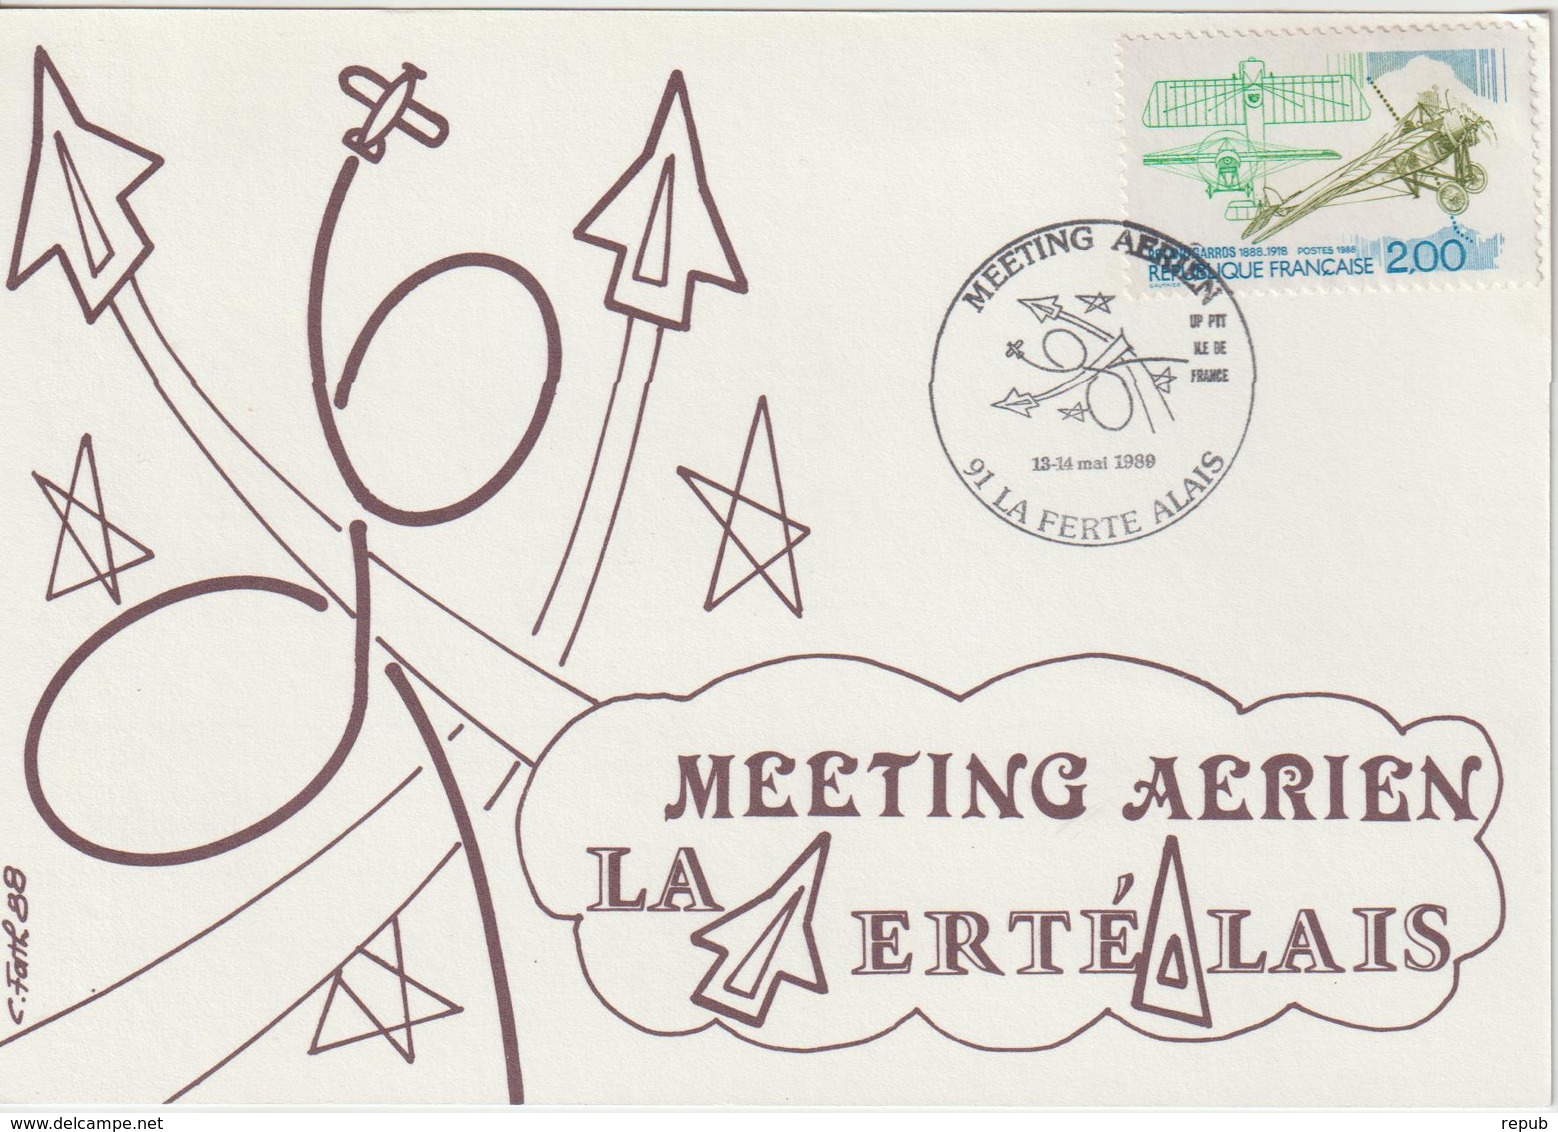 France Carte Meeting Aérien La Ferté Alais 1989 - Commemorative Postmarks